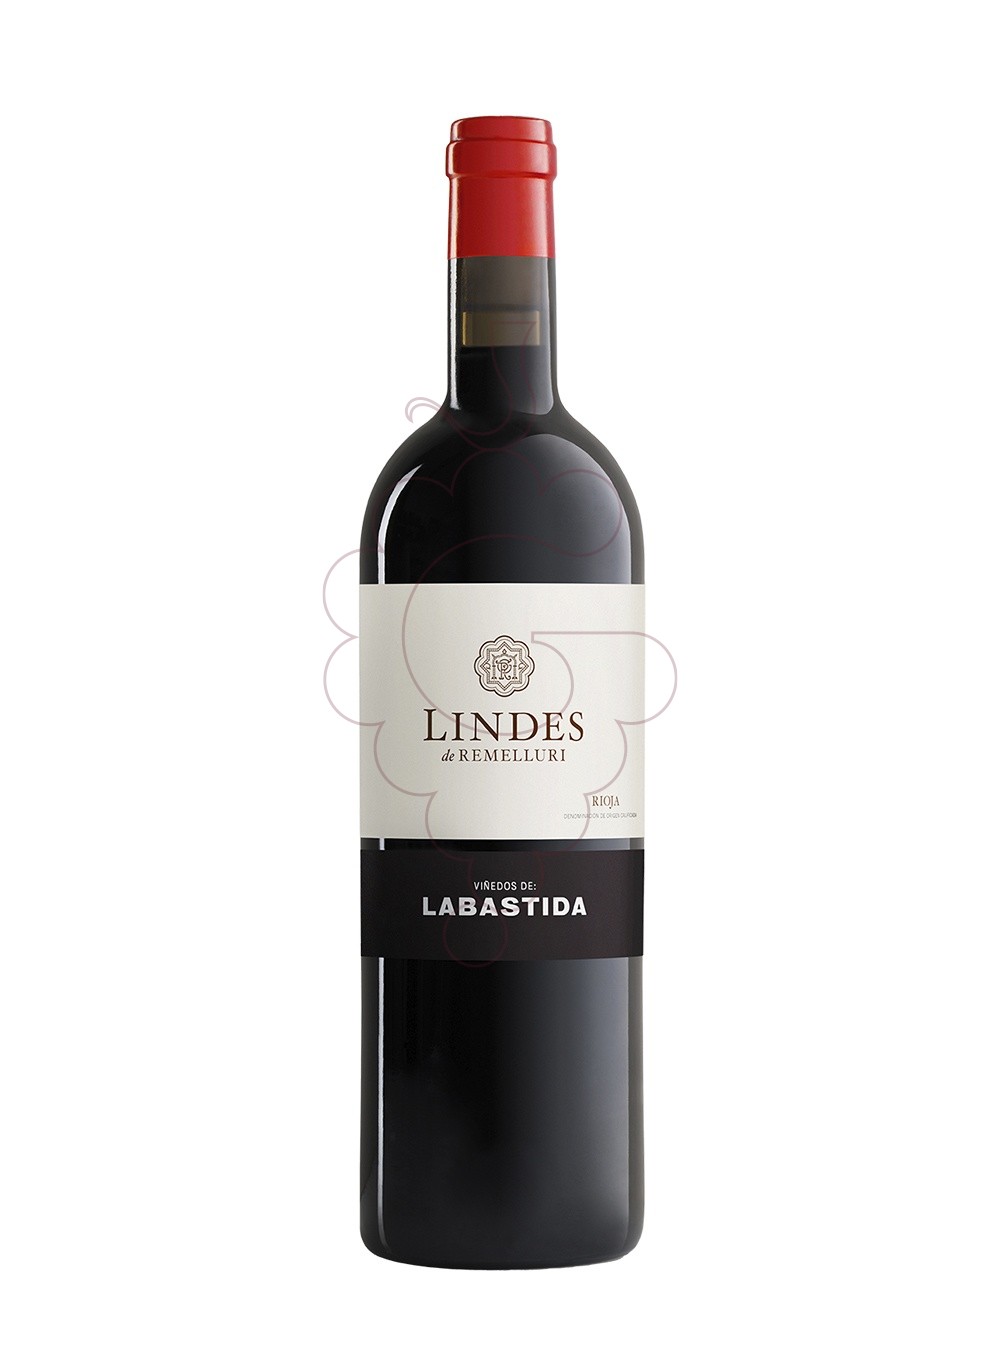 Photo Lindes de Remelluri (Labastida) red wine